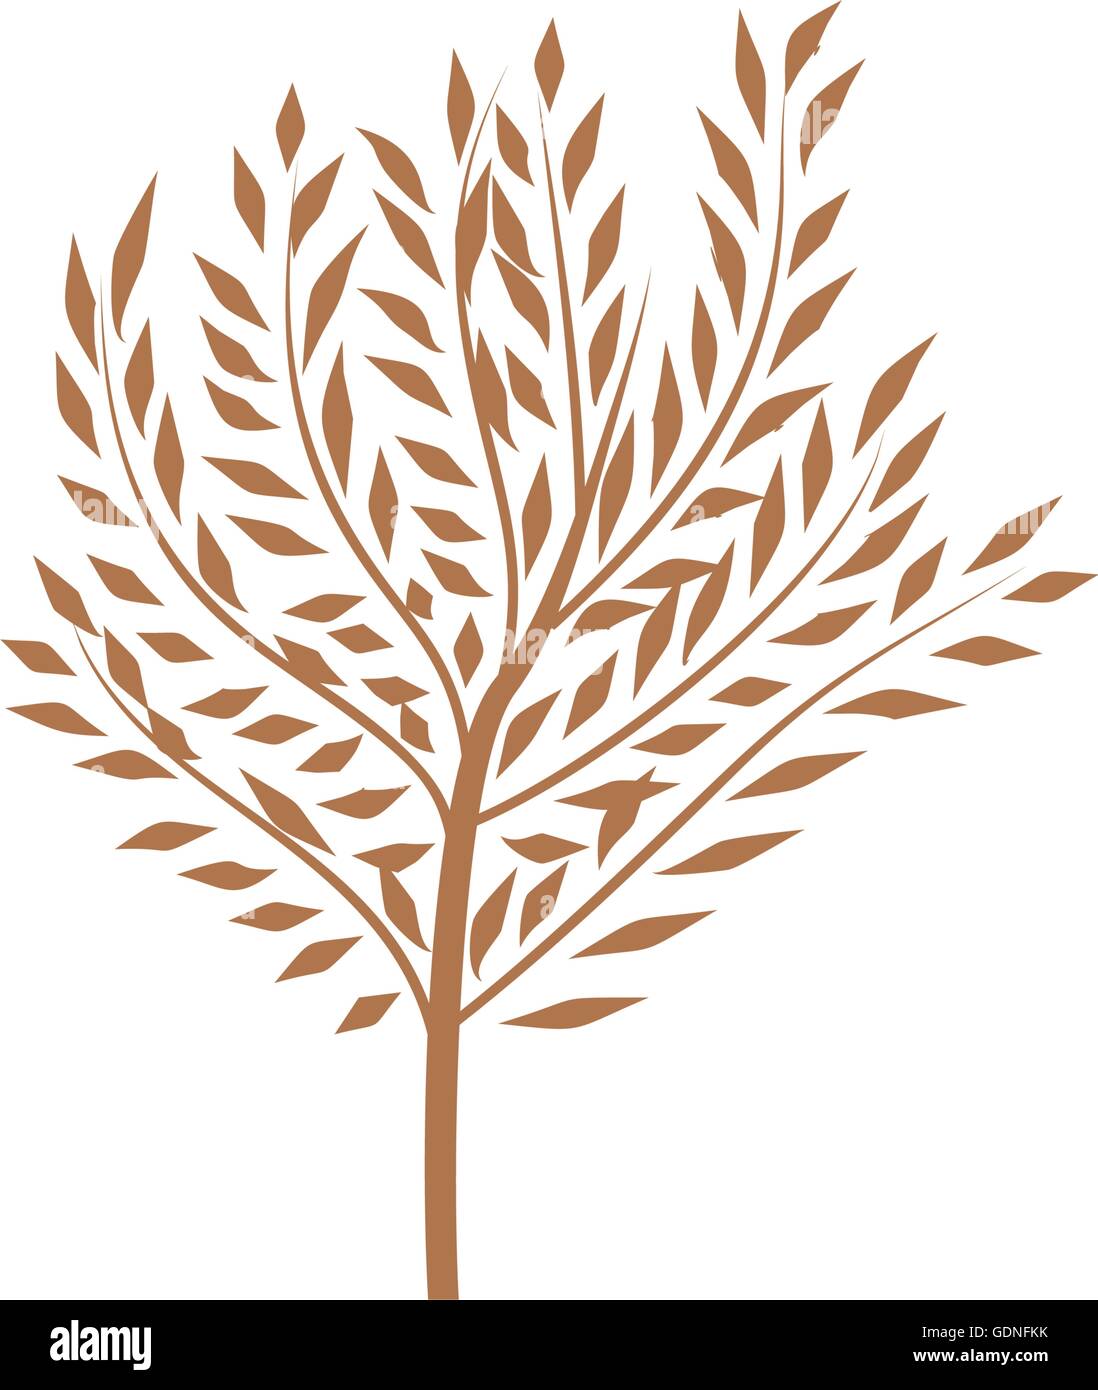 Le mince tronc de l'arbre avec des feuilles d'un logo. Forêt et parc. Design élégant. Illustration de Vecteur